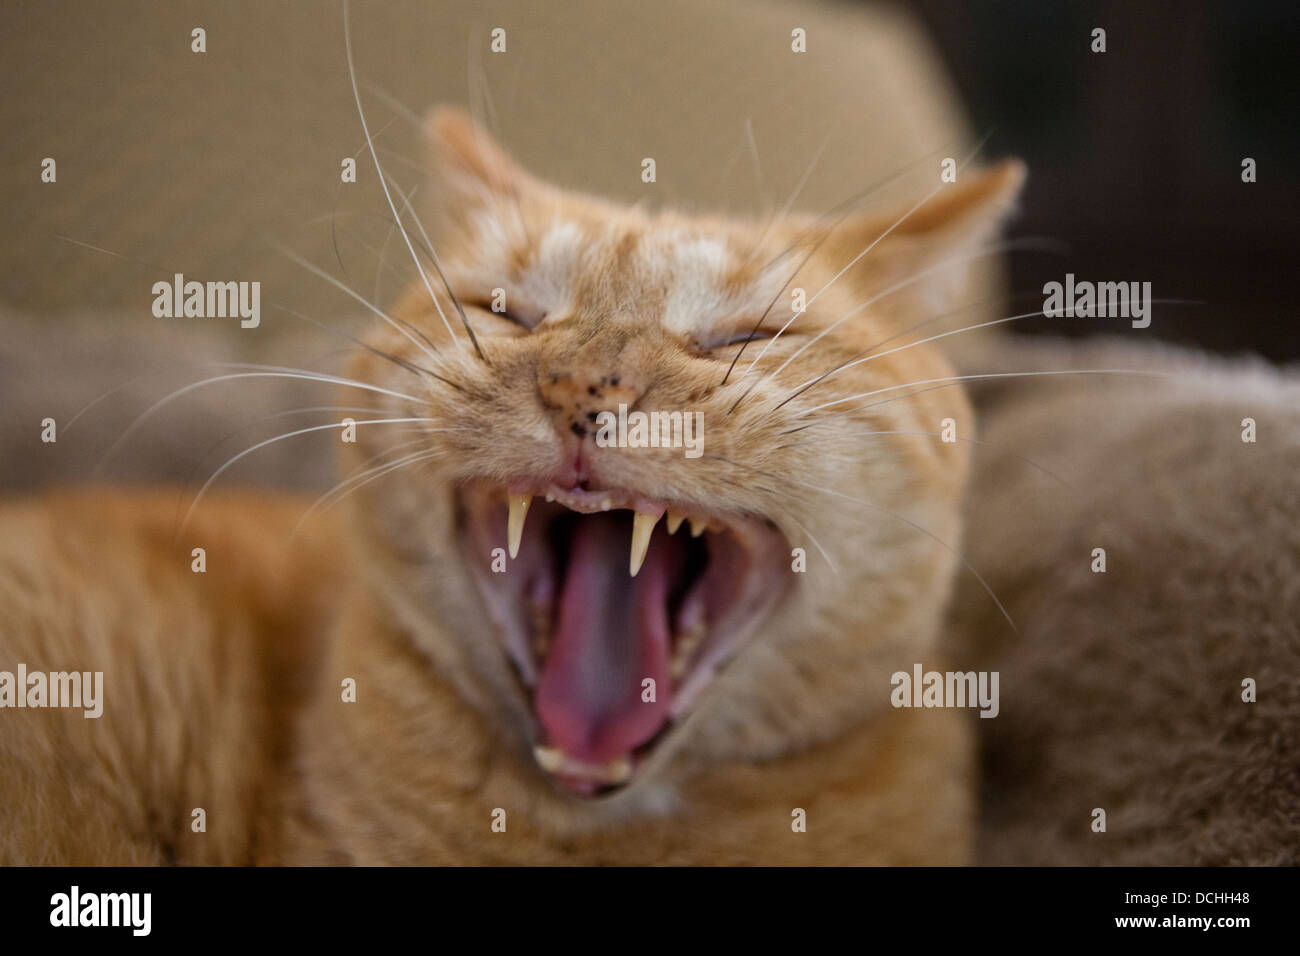 Portrait de l'orange et au gingembre les cheveux courts Mackrel Tabby Cat chats (Felis) les bâillements et montrant les dents. Banque D'Images